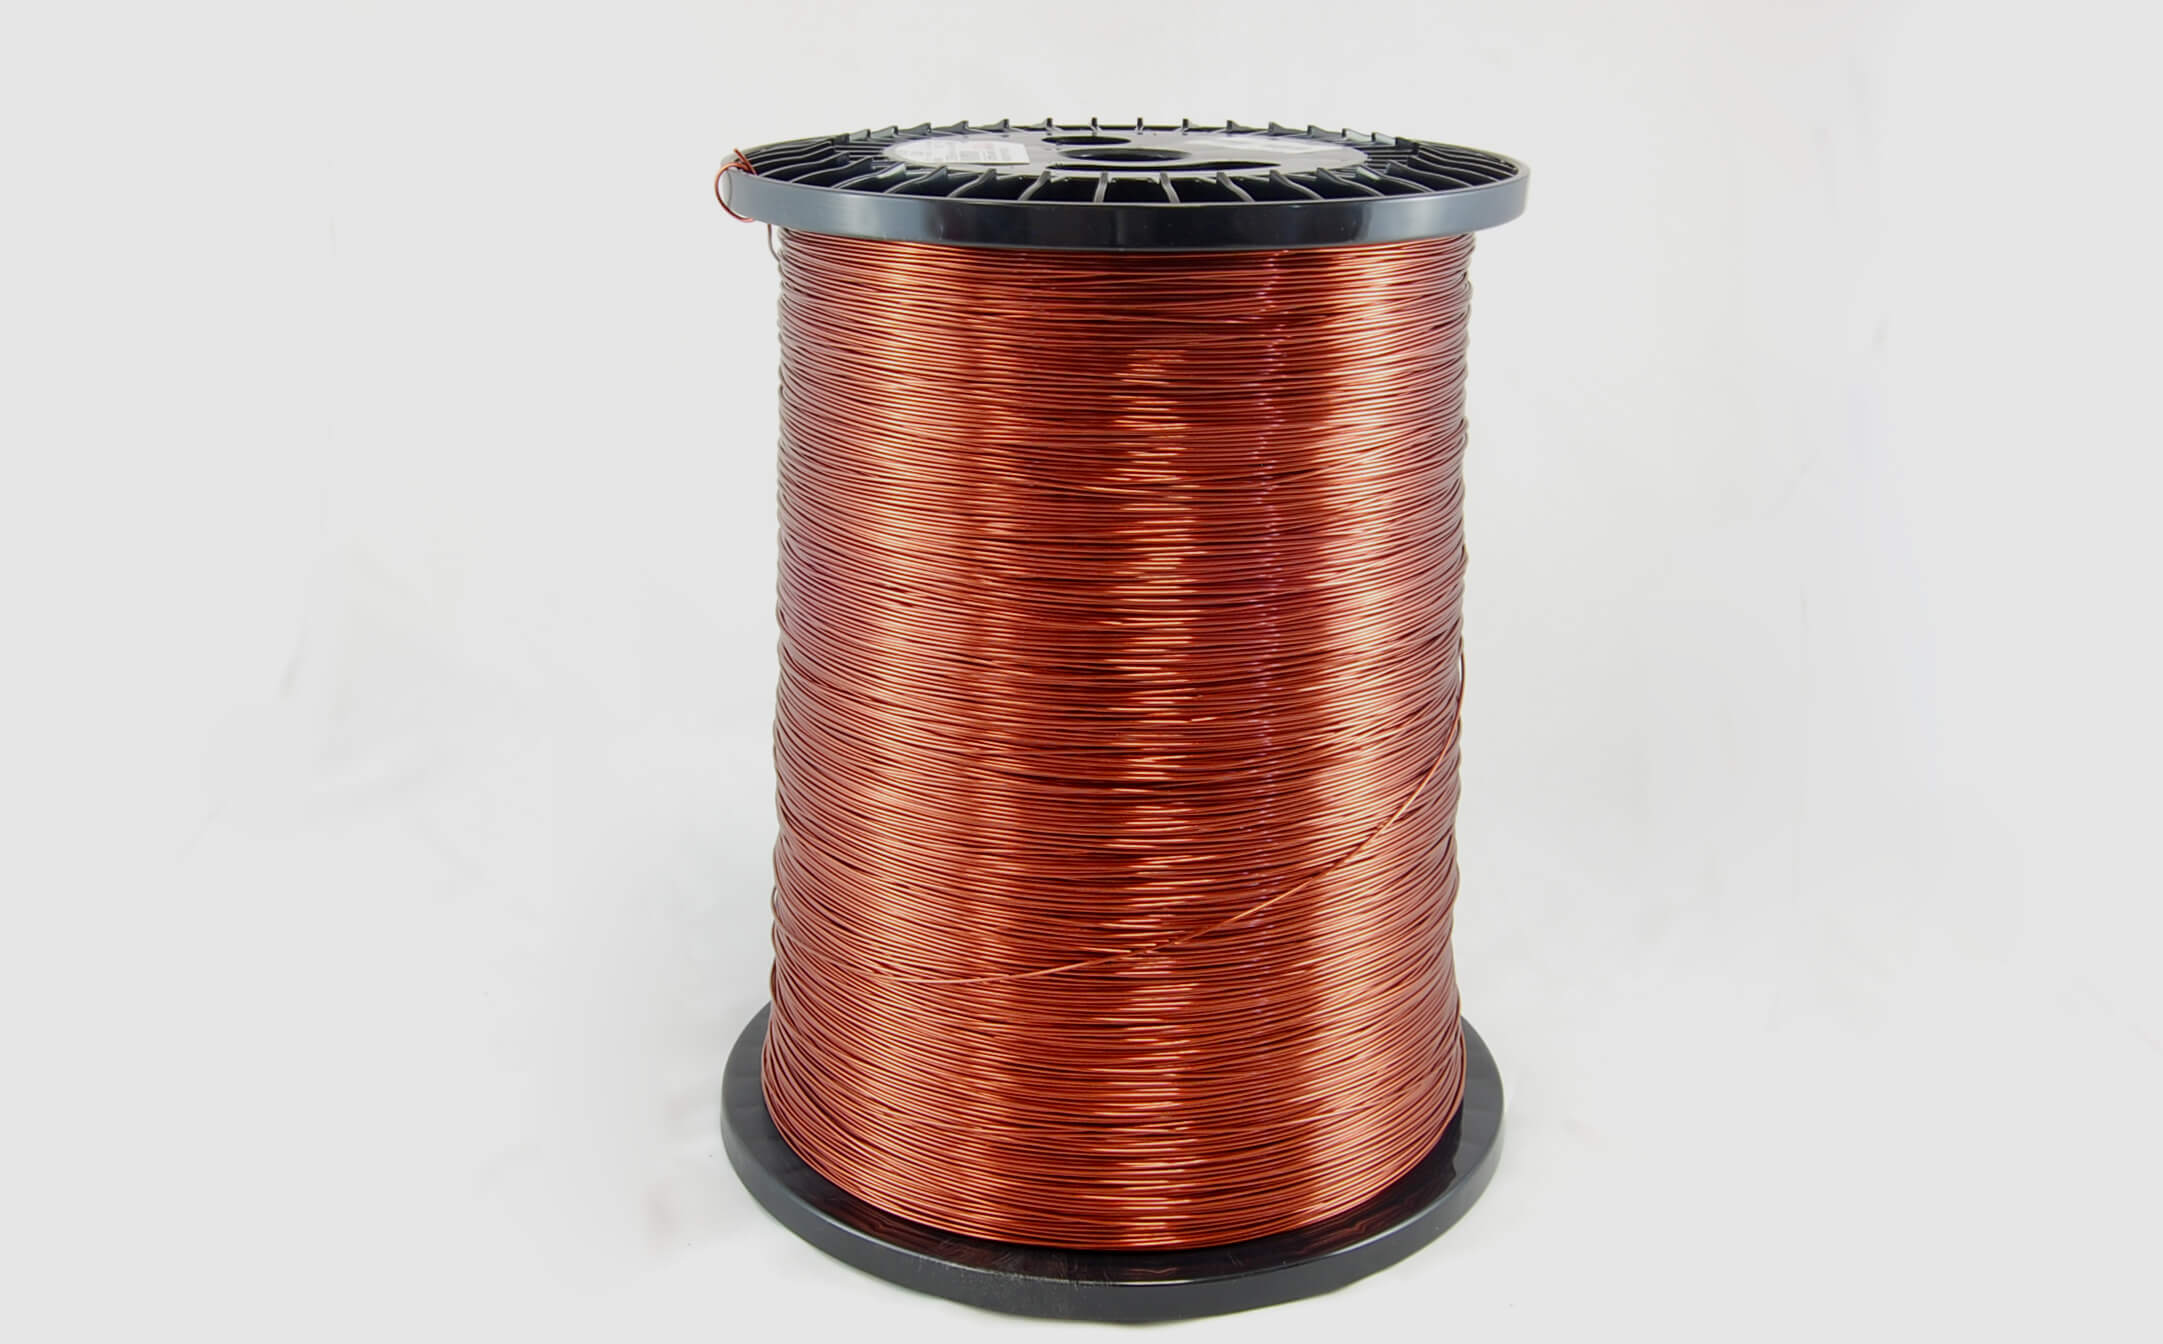 #21 Heavy Super Hyslik 200 Round HTAIH MW 35 Copper Magnet Wire 200°C, copper, 85 LB pail (average wght.)